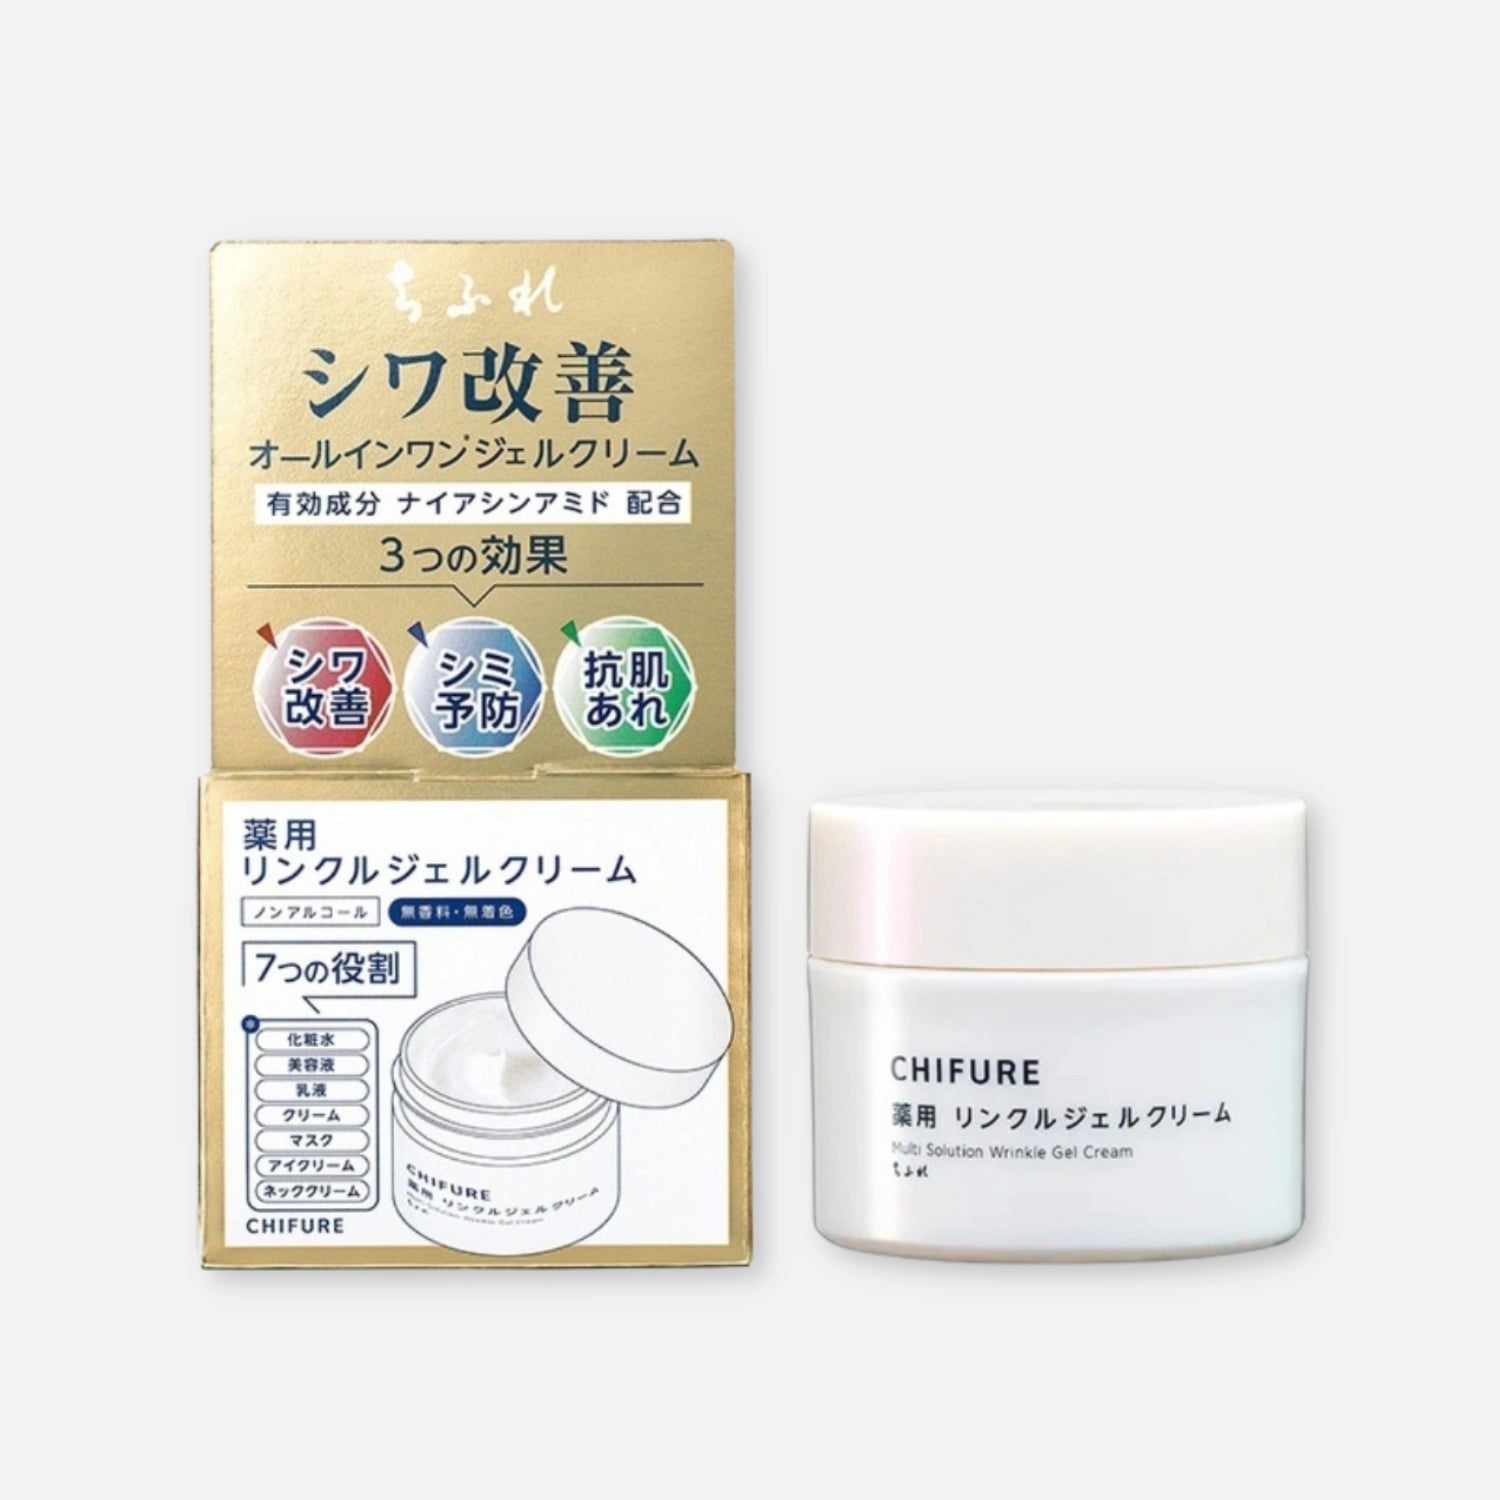 Chifure Multi Solution Wrinkle Niacinamide 5% Gel Cream 103g - Buy Me Japan